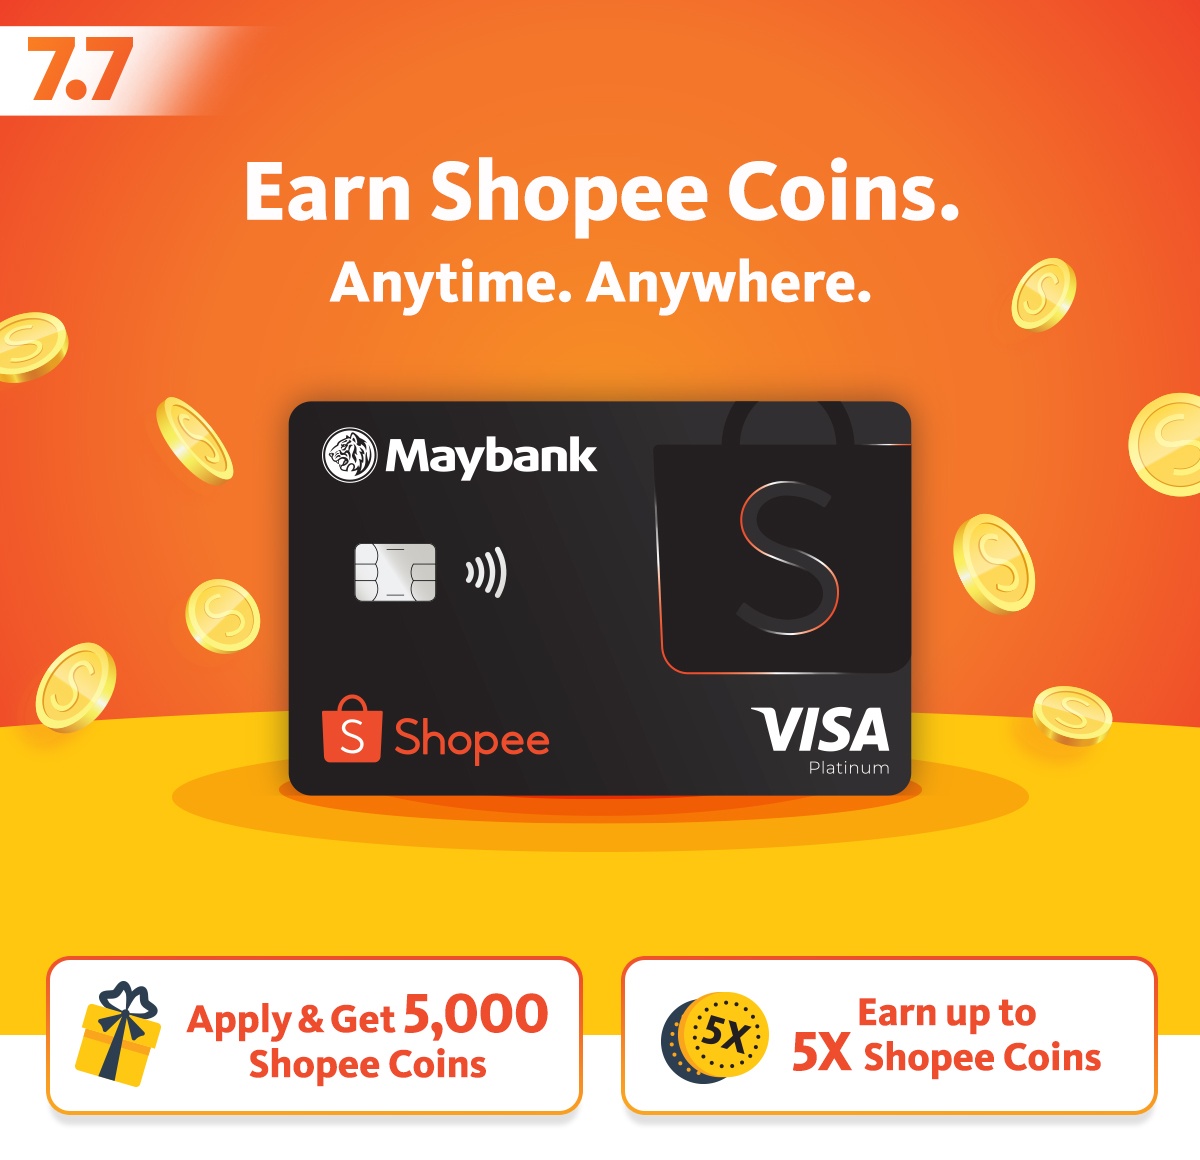 Maybank Visa Shopee Credit Card